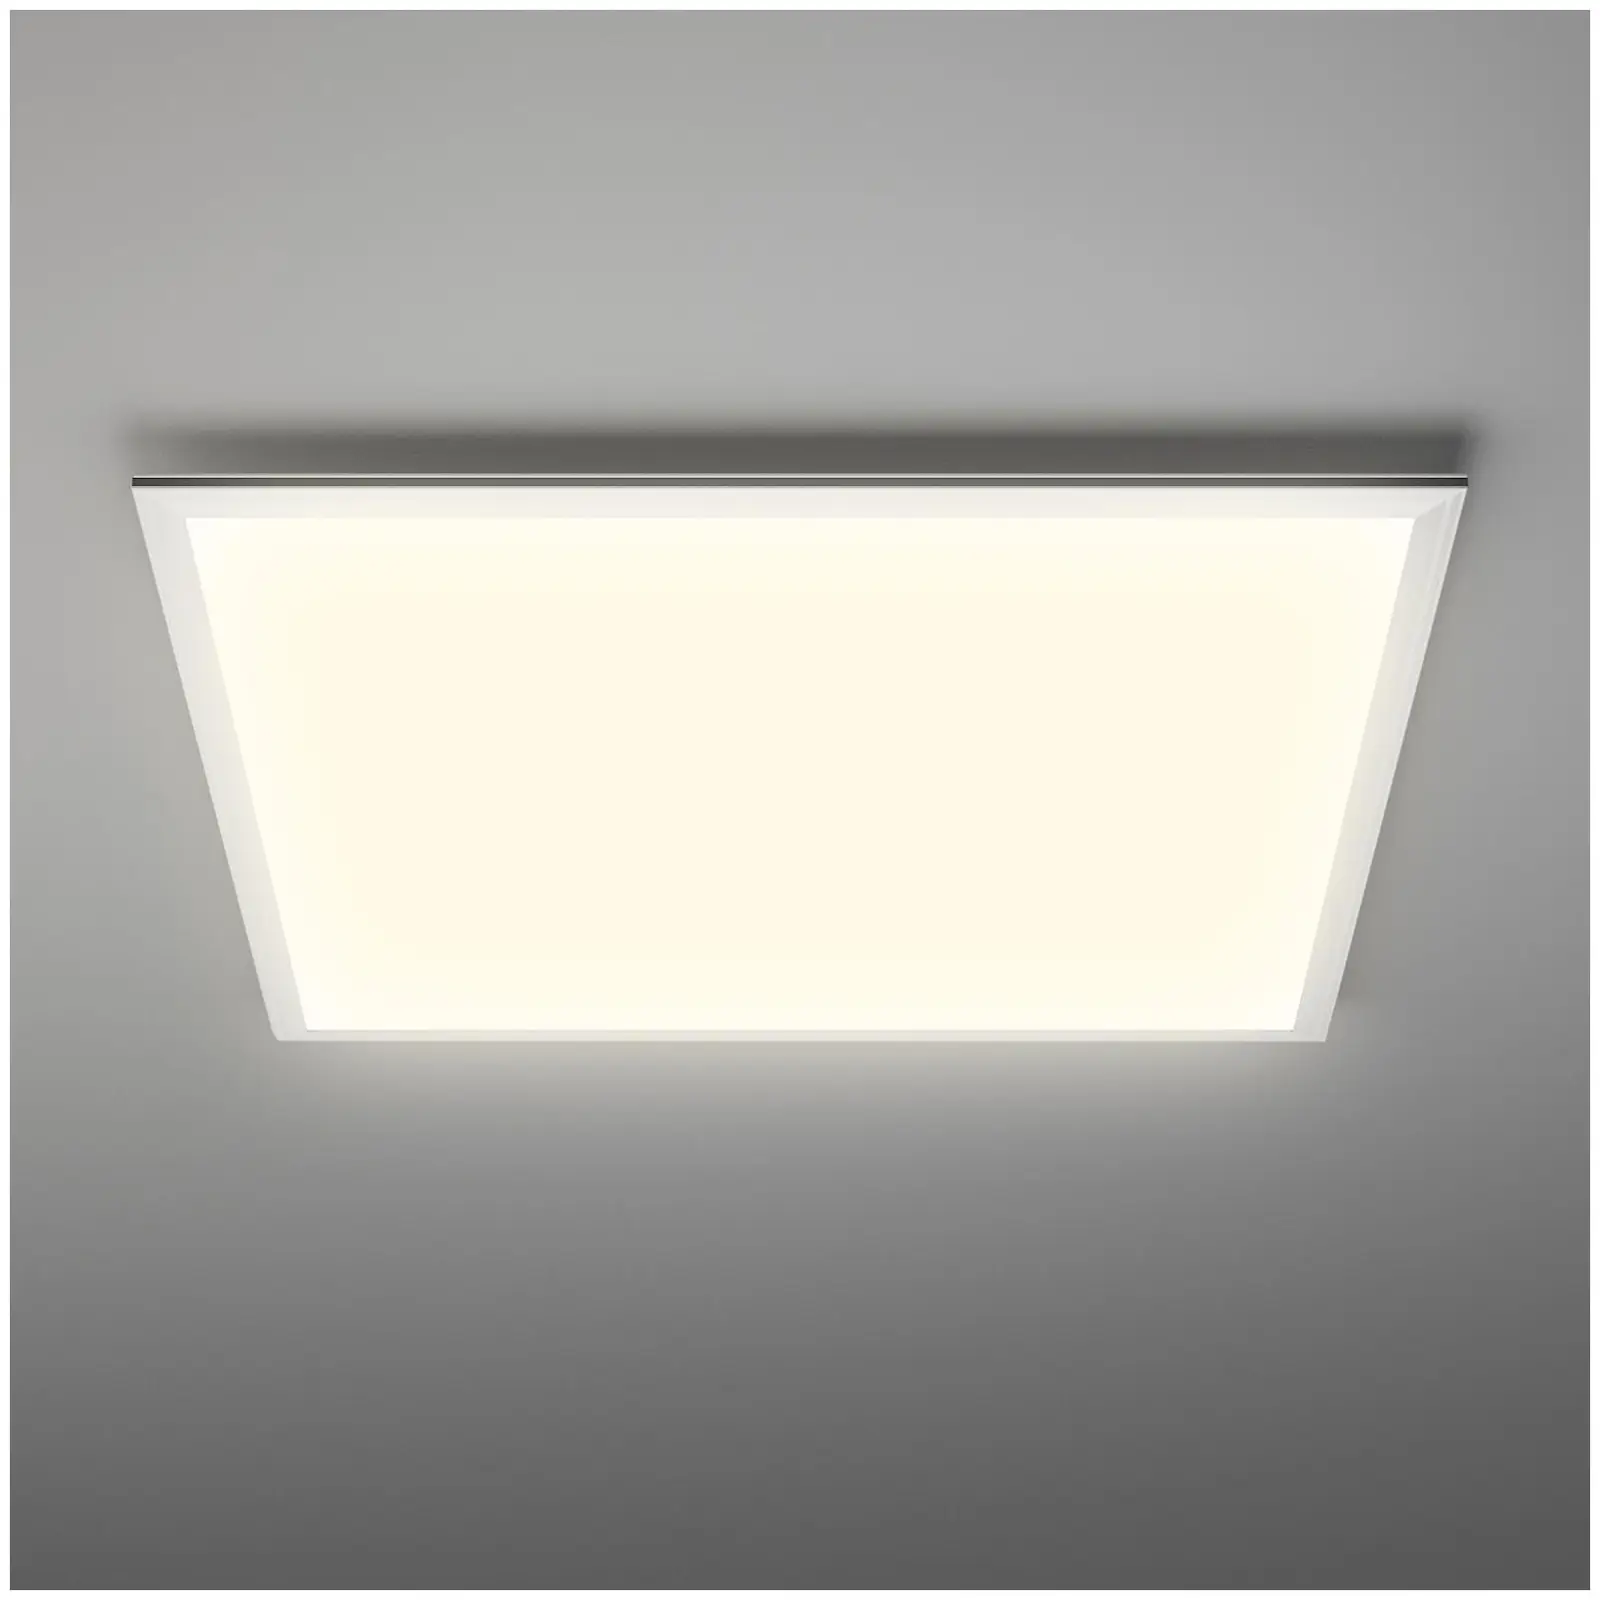 Panneau LED - 62 x 62 cm - 40 W - 3 800 lm - 4 000 K (blanc neutre)